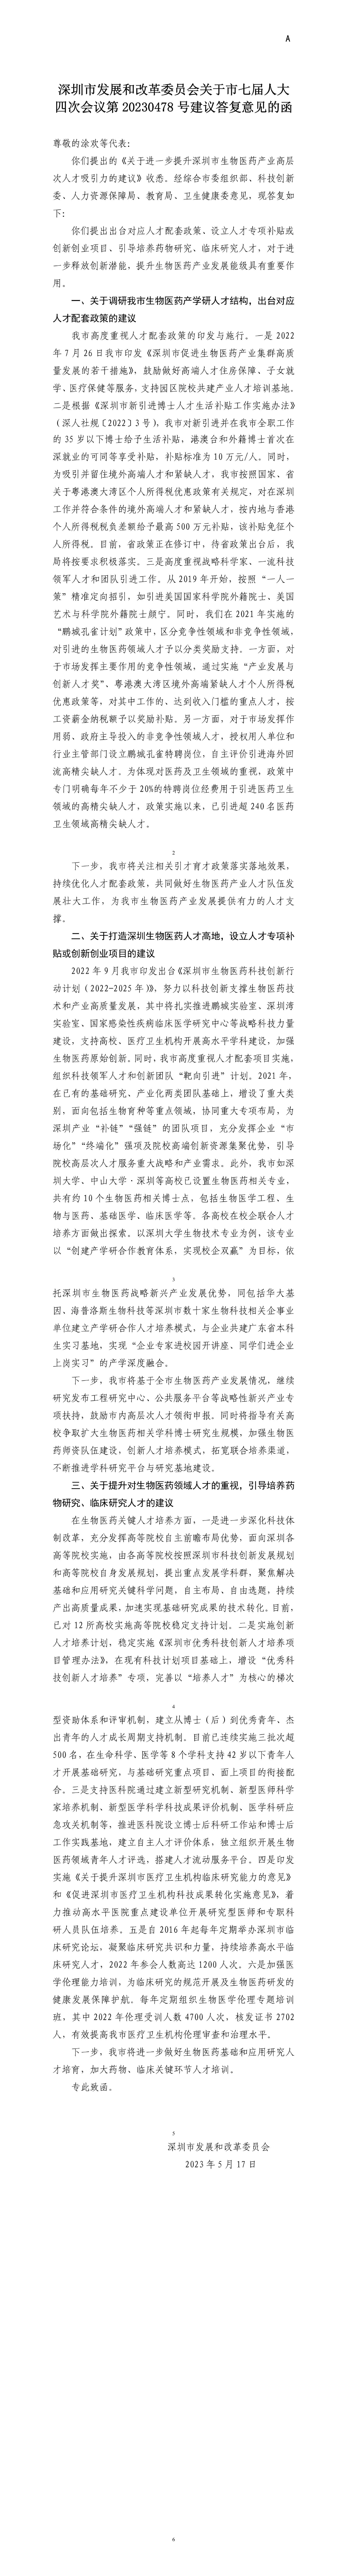 深圳市发展和改革委员会关于市七届人大四次会议第20230478号建议答复意见的函.jpg